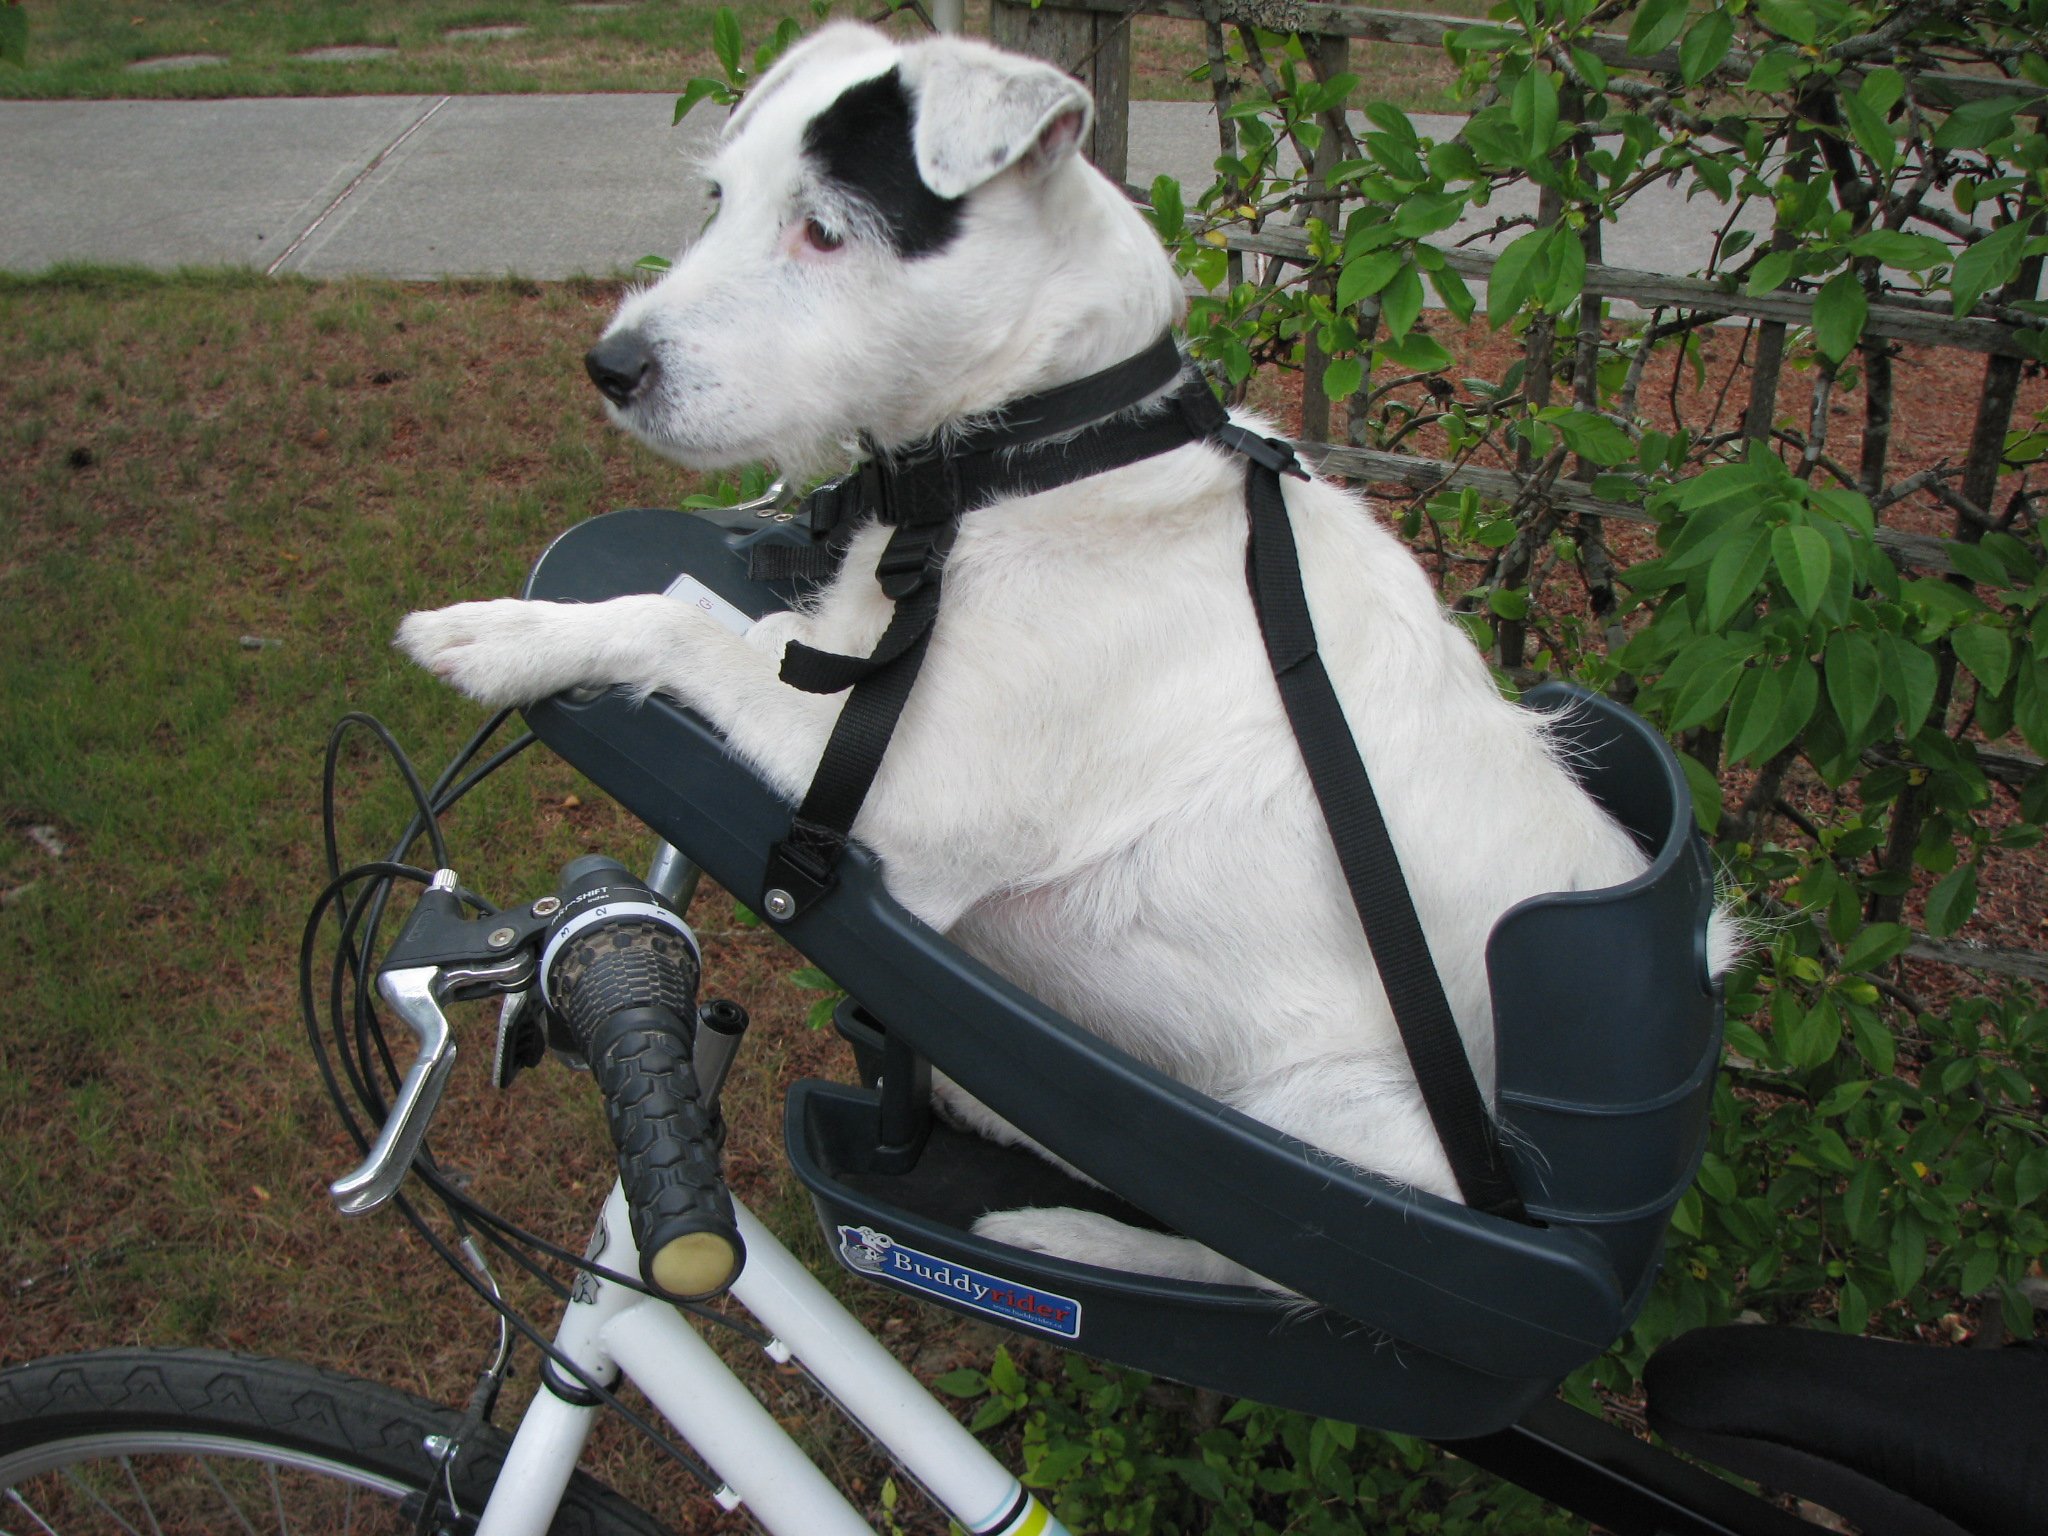 Buddy Rider кресло для собак. Велосидение для собак buddy Rider. Велосипедное сиденье buddy Rider. Велокресло для собак buddy Rider. Pet racer